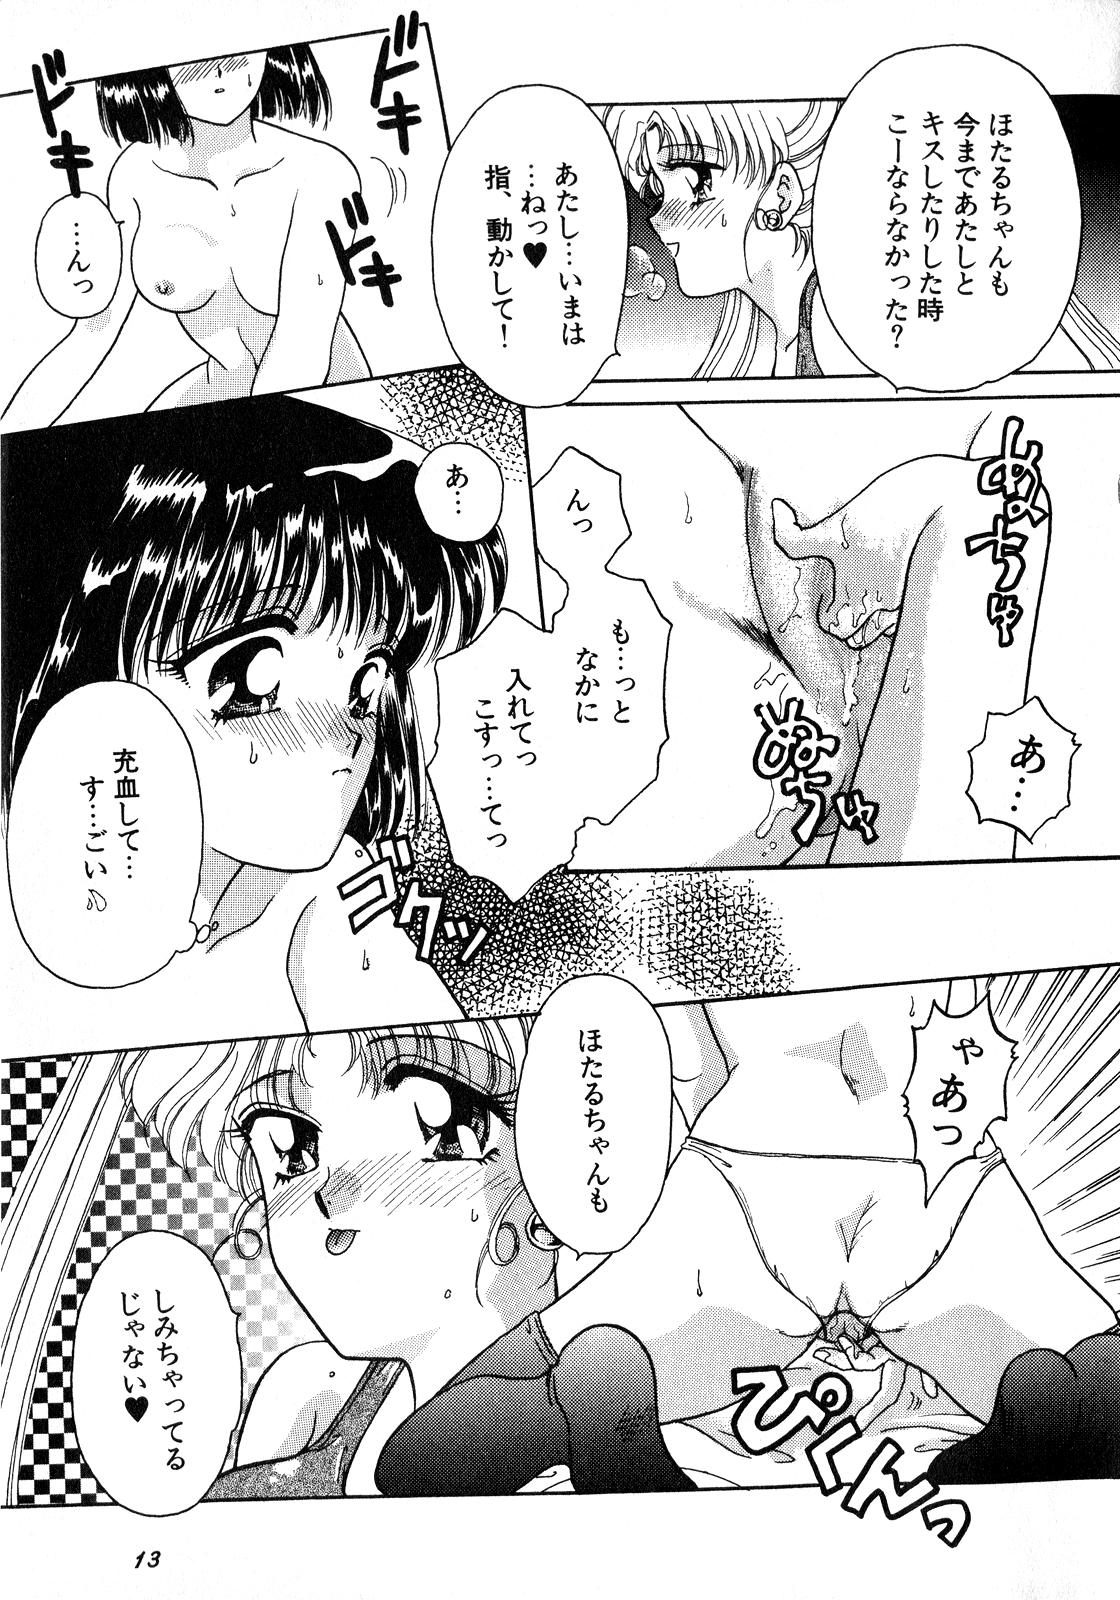 Blow Job Lunatic Party 8 - Sailor moon Cam Porn - Page 14